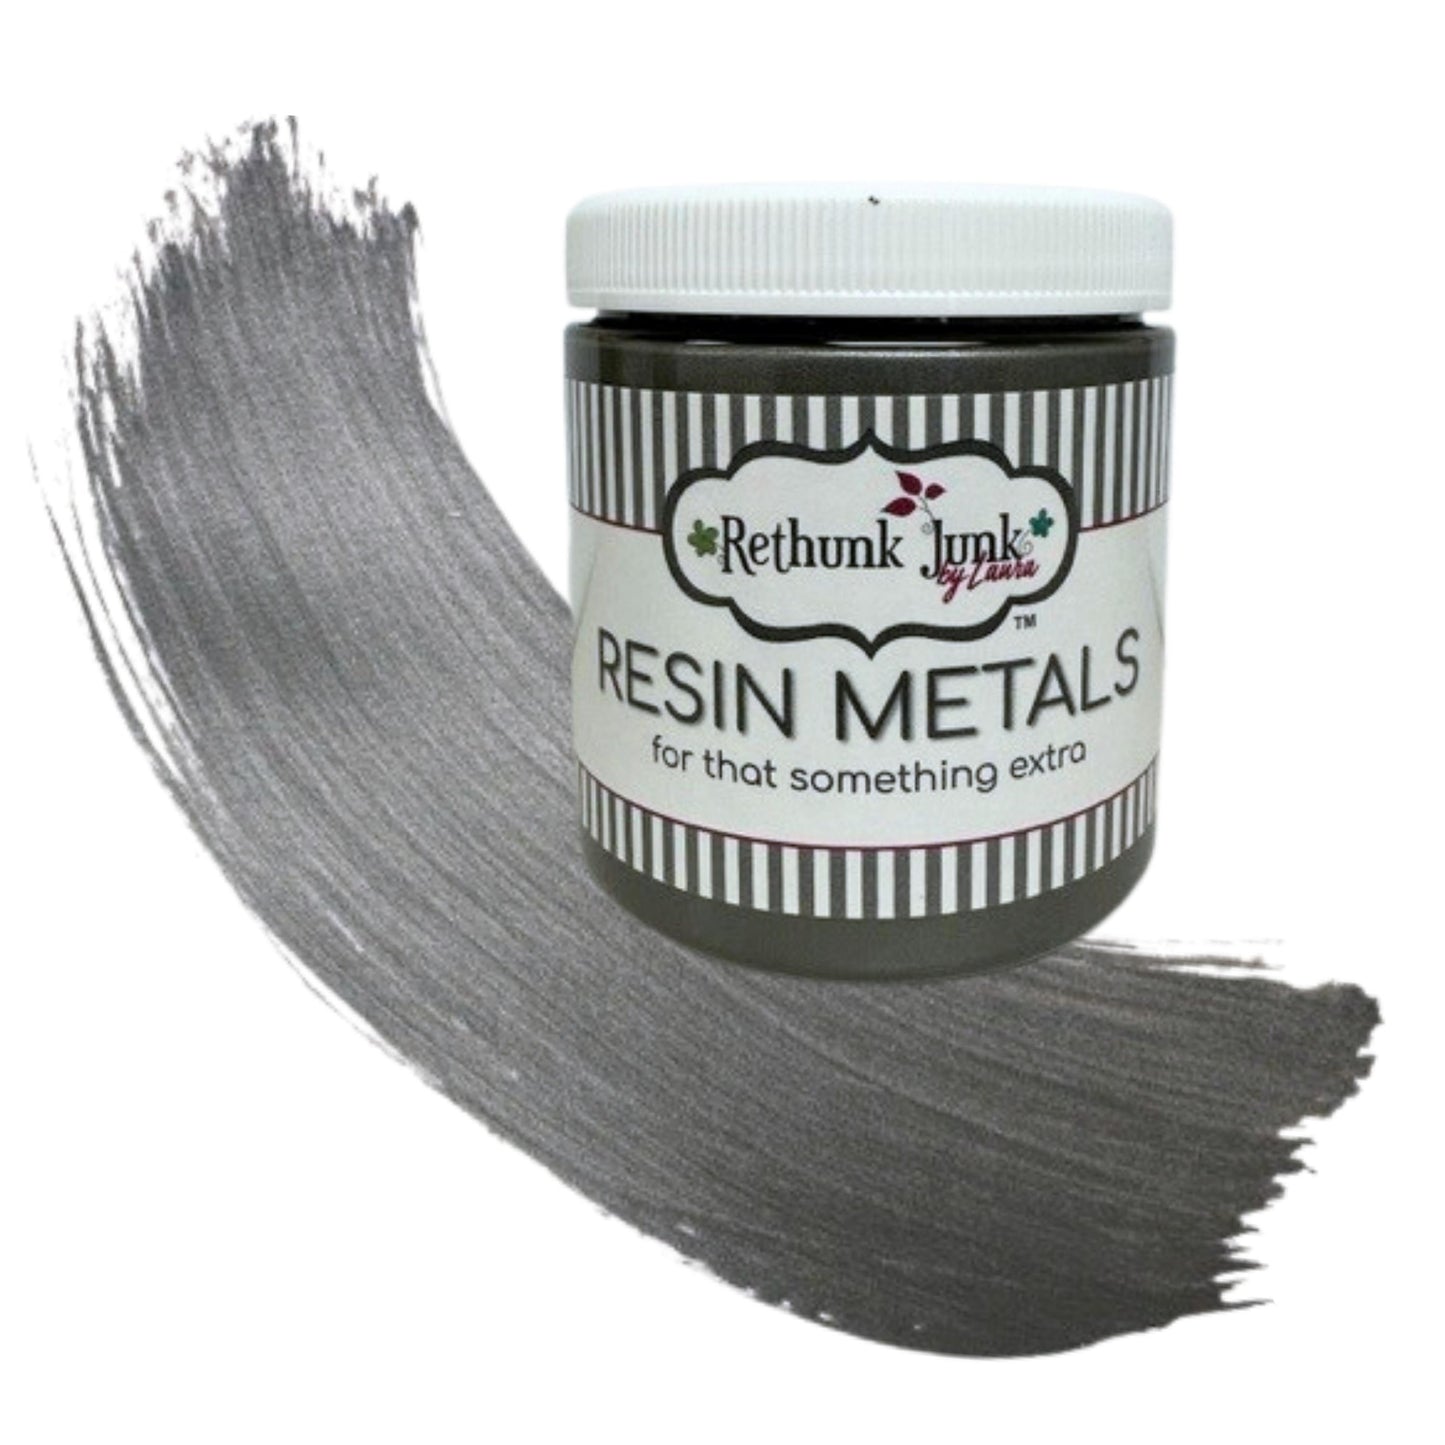 Rethunk Junk Resin Paint in Metallic Pewter